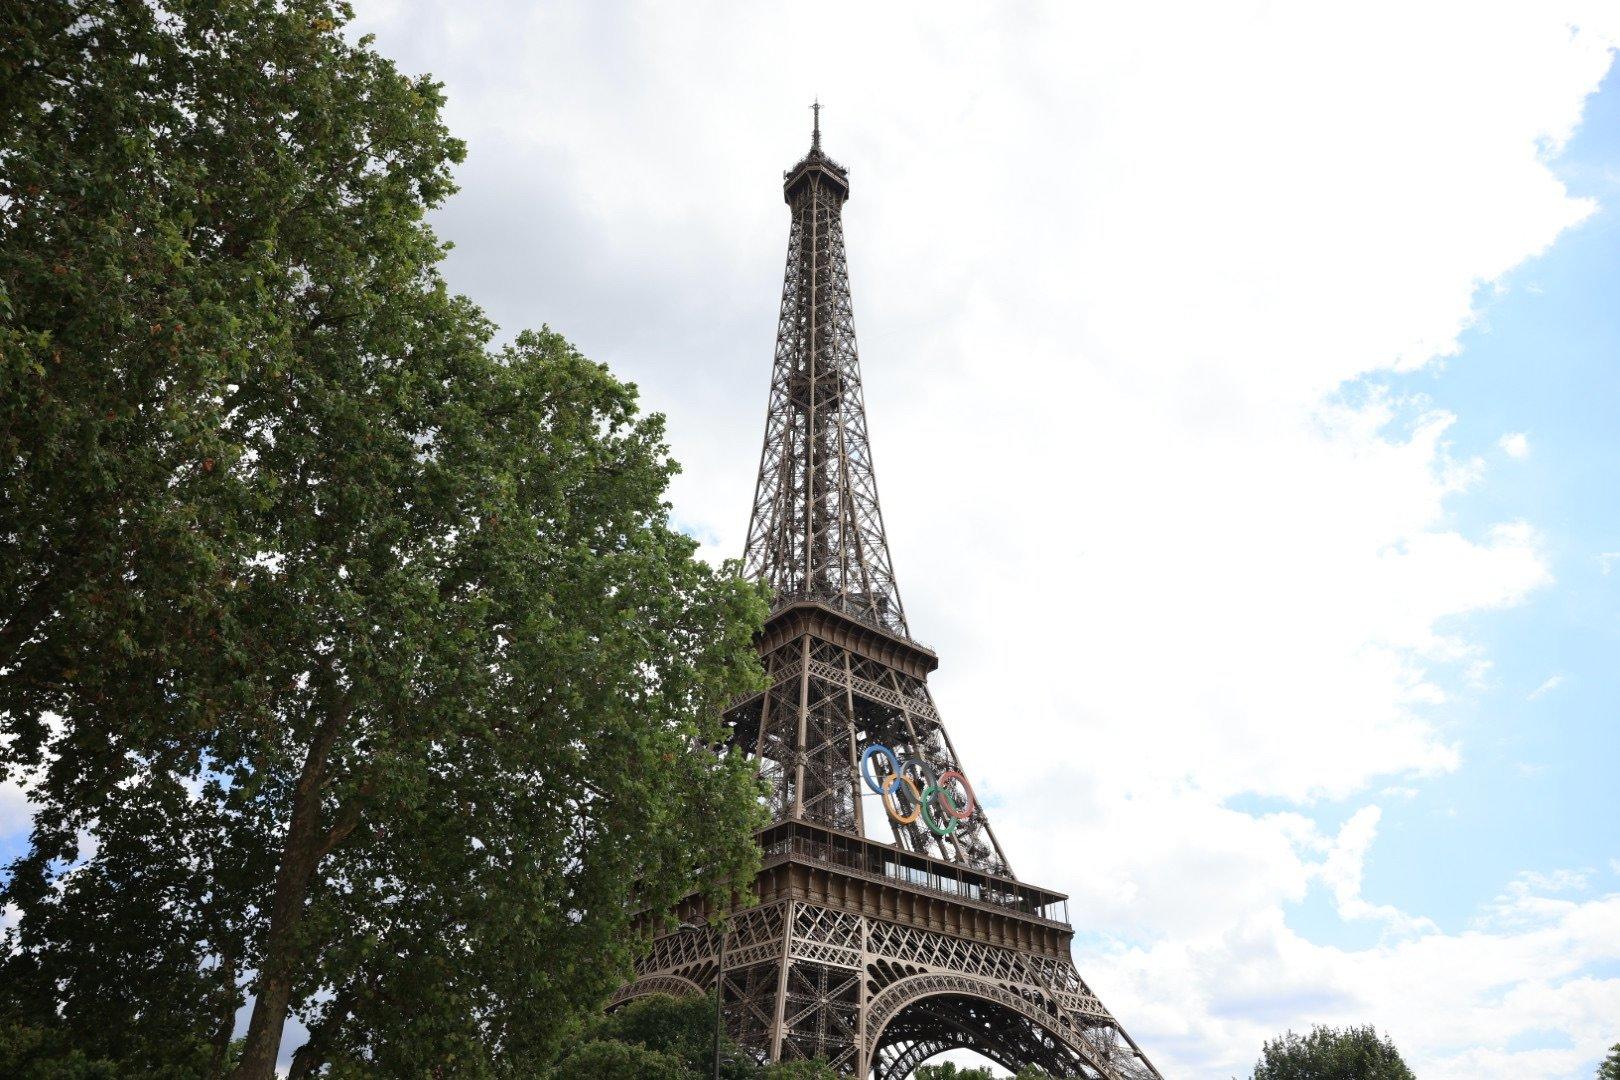 Une nouvelle fréquence radio lancée depuis la tour Eiffel à Paris dédiée aux Jeux olympiques, émet temporairement en vue de la cérémonie d’ouverture. (Illustration). LP/Olivier Arandel